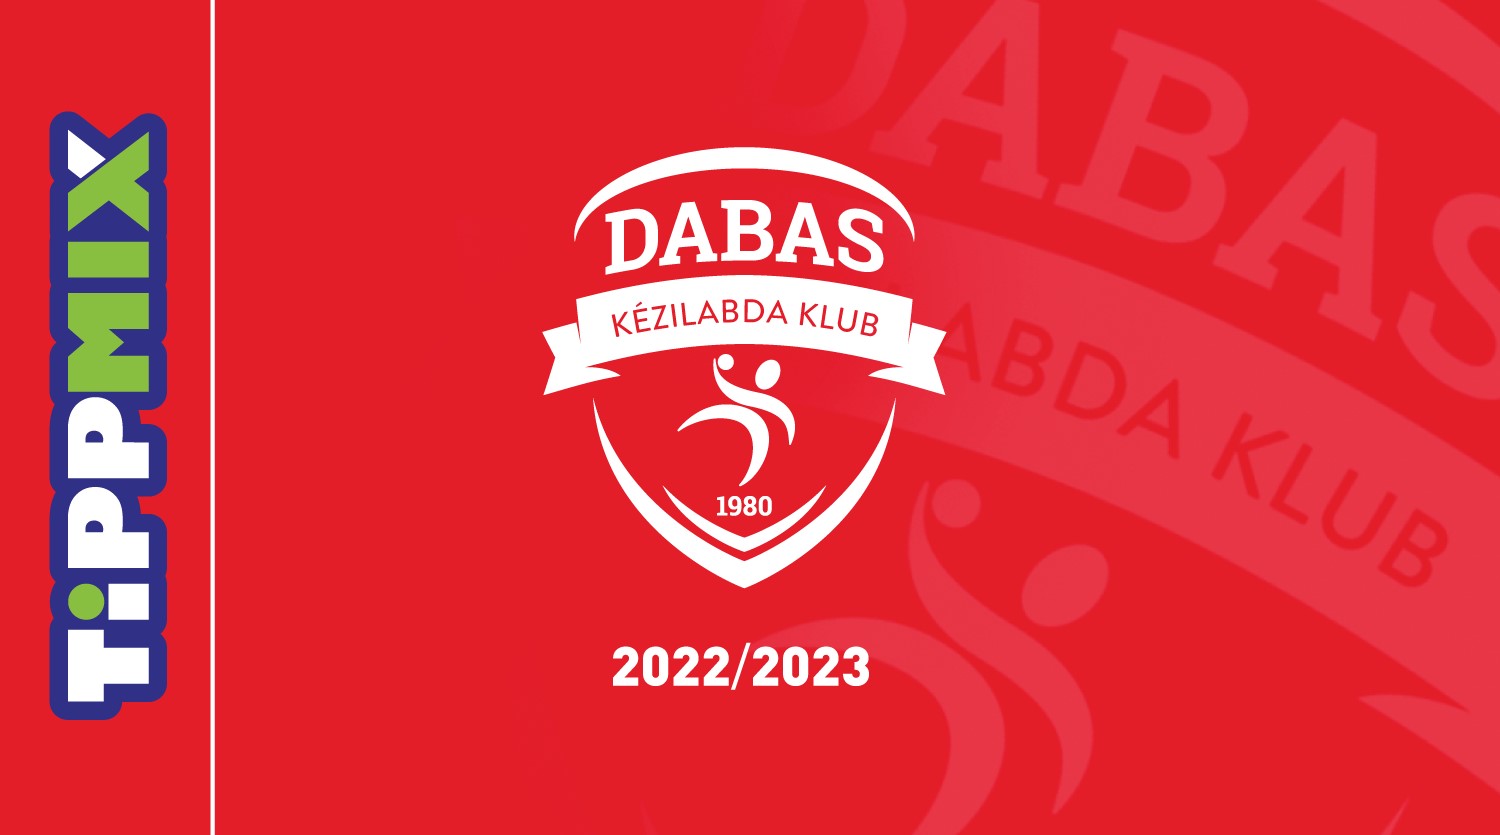 Bérlet- és jegyinformációk a 2022/2023-as szezonra